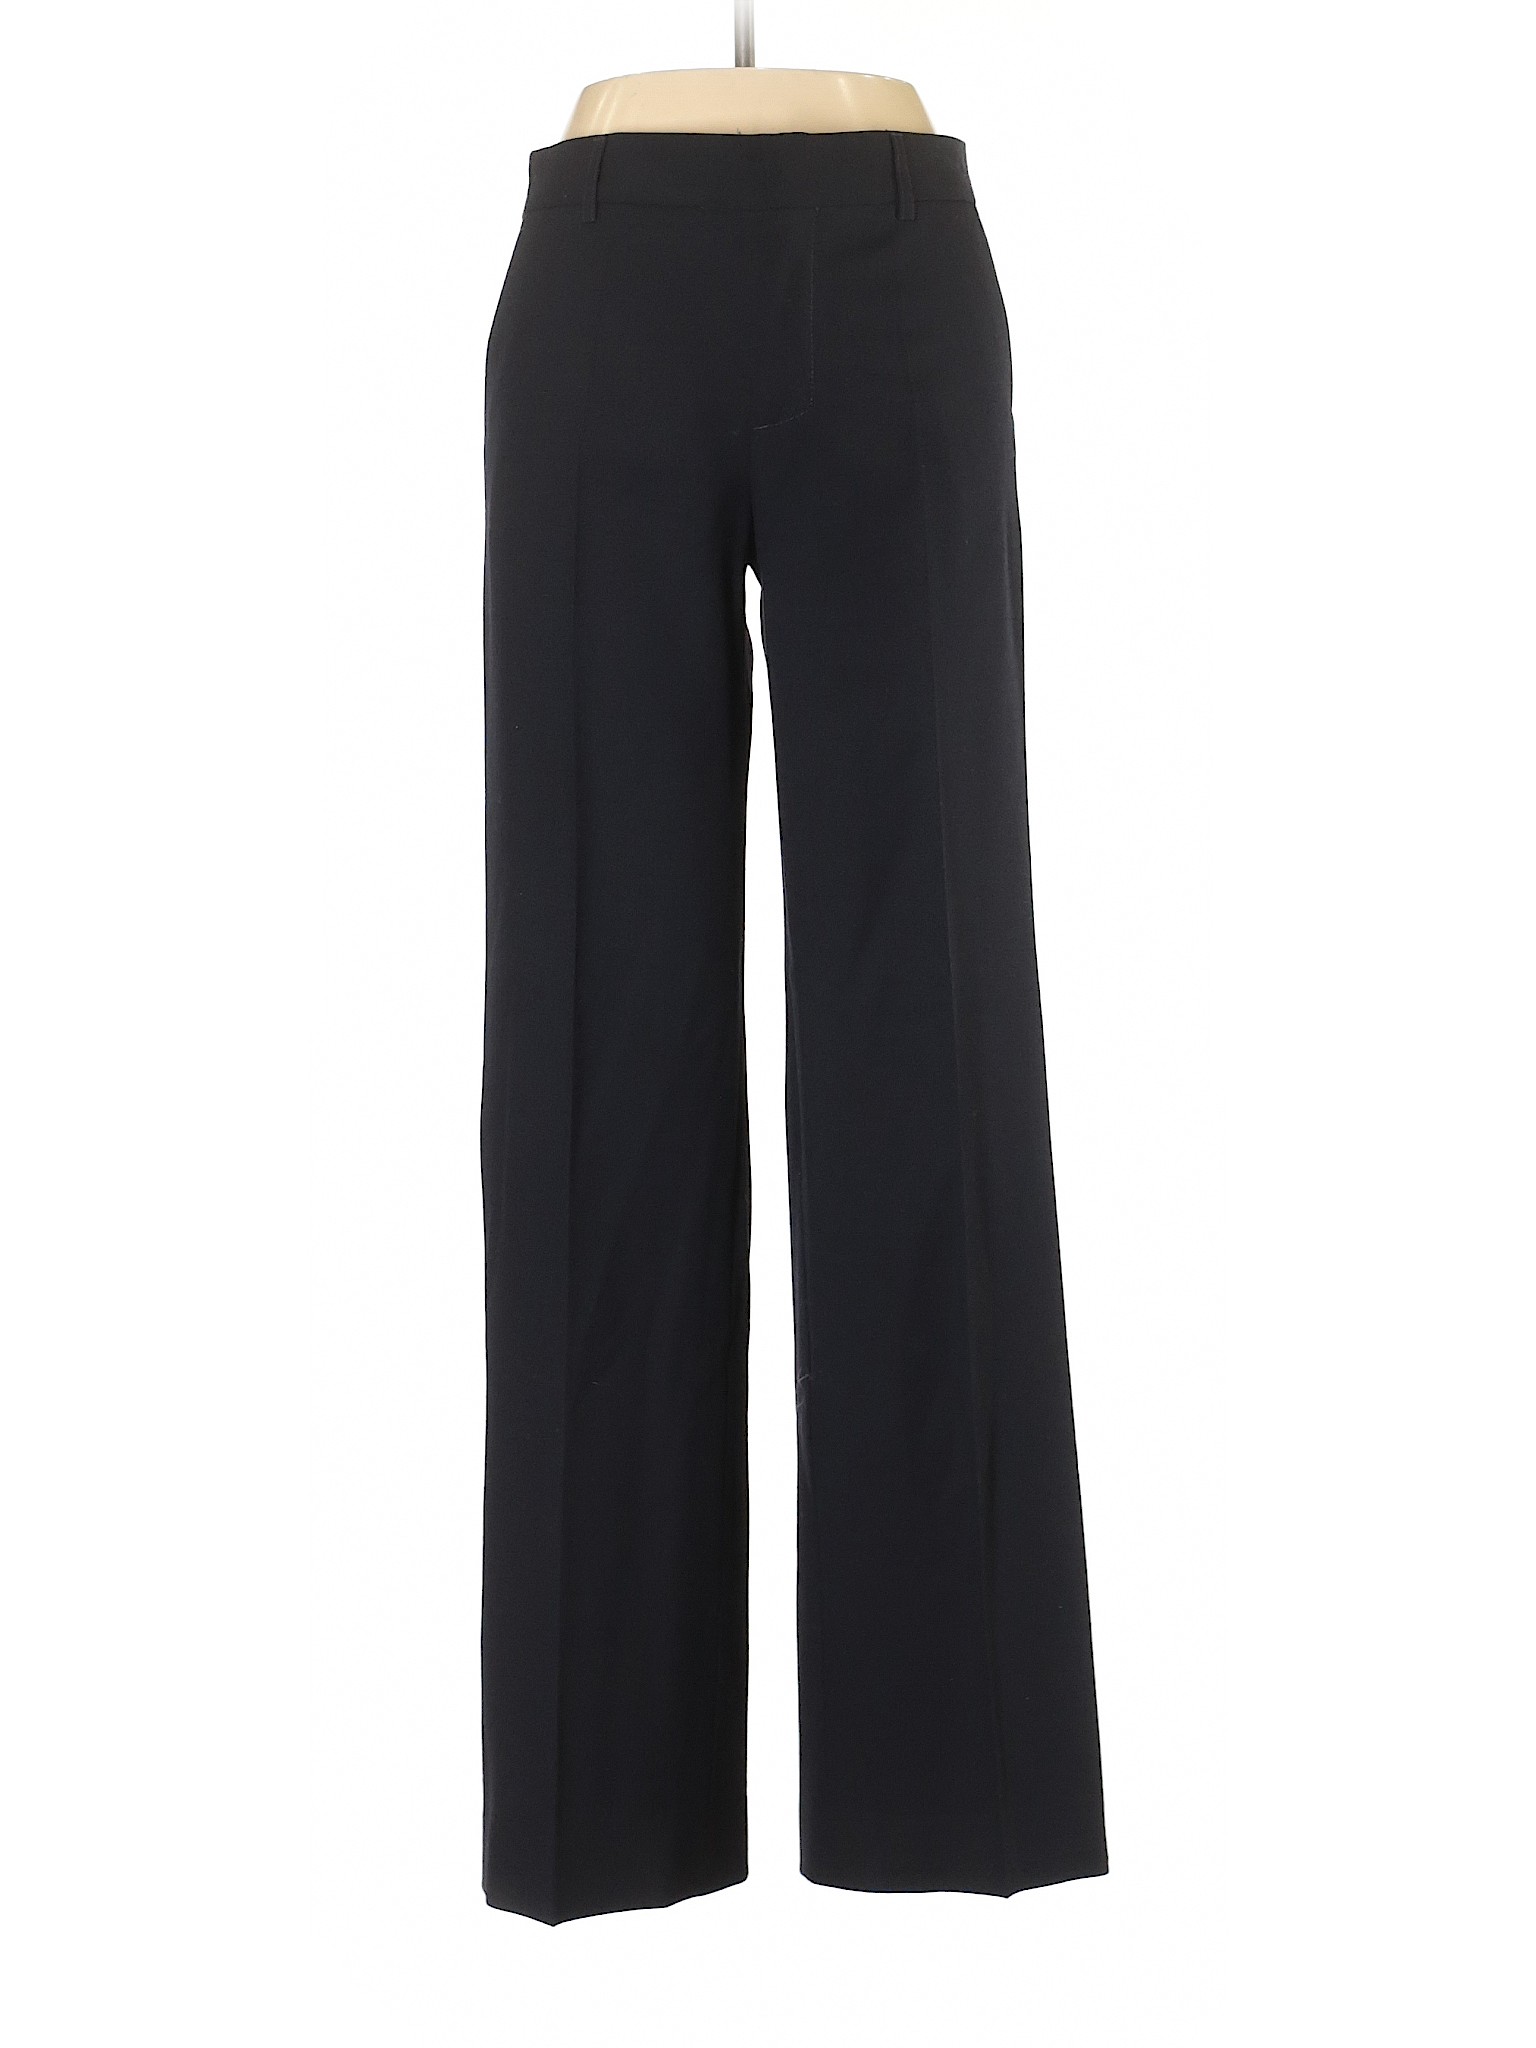 Zara Women Black Dress Pants 4 | eBay